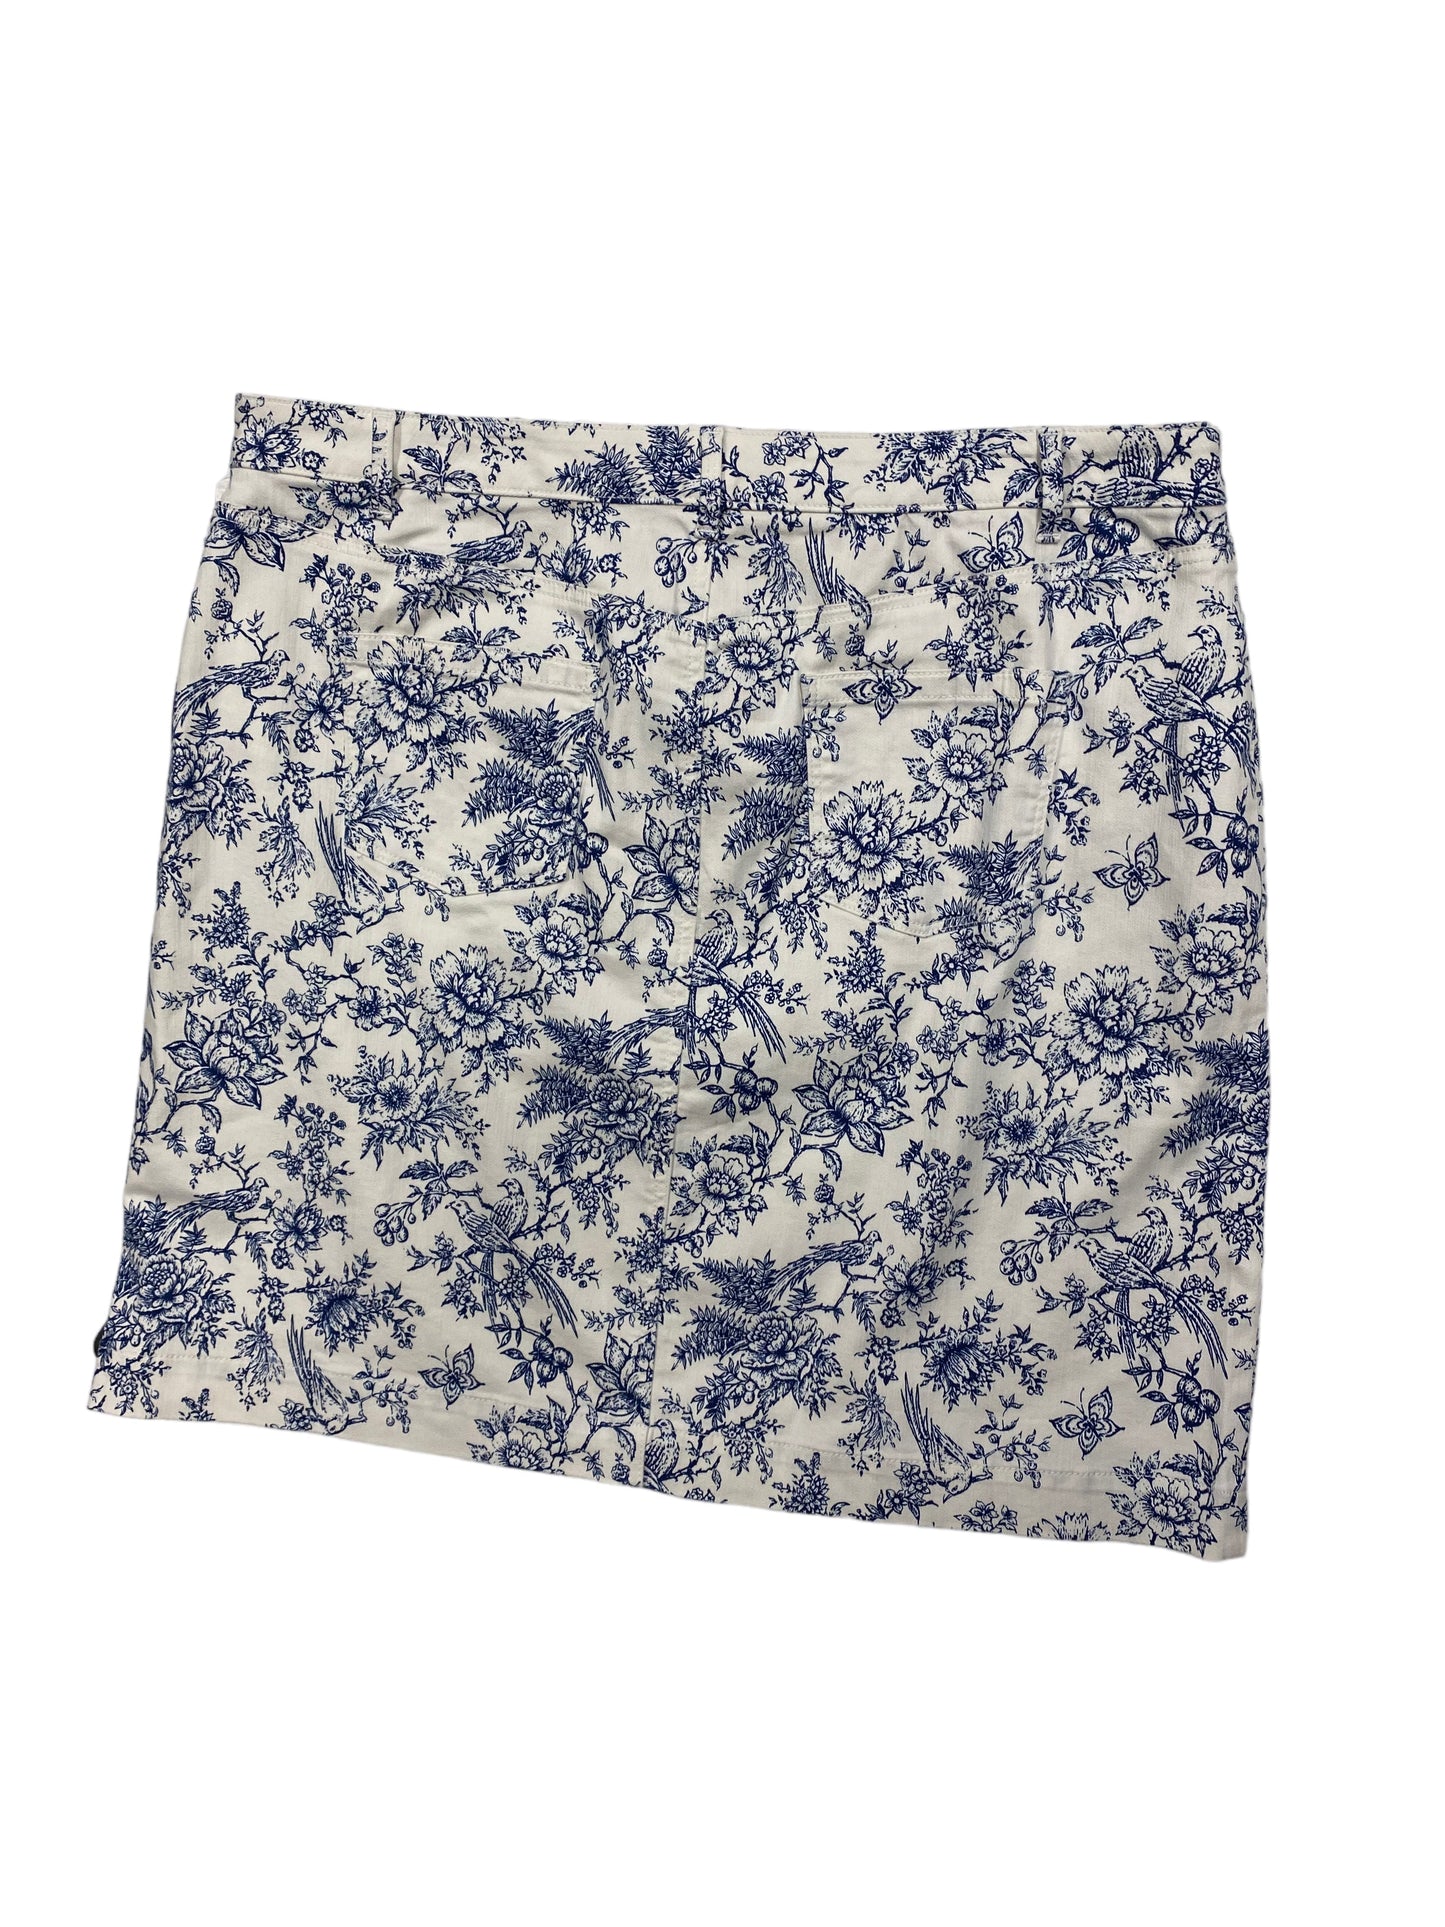 Blue & White Skirt Mini & Short Talbots, Size 18